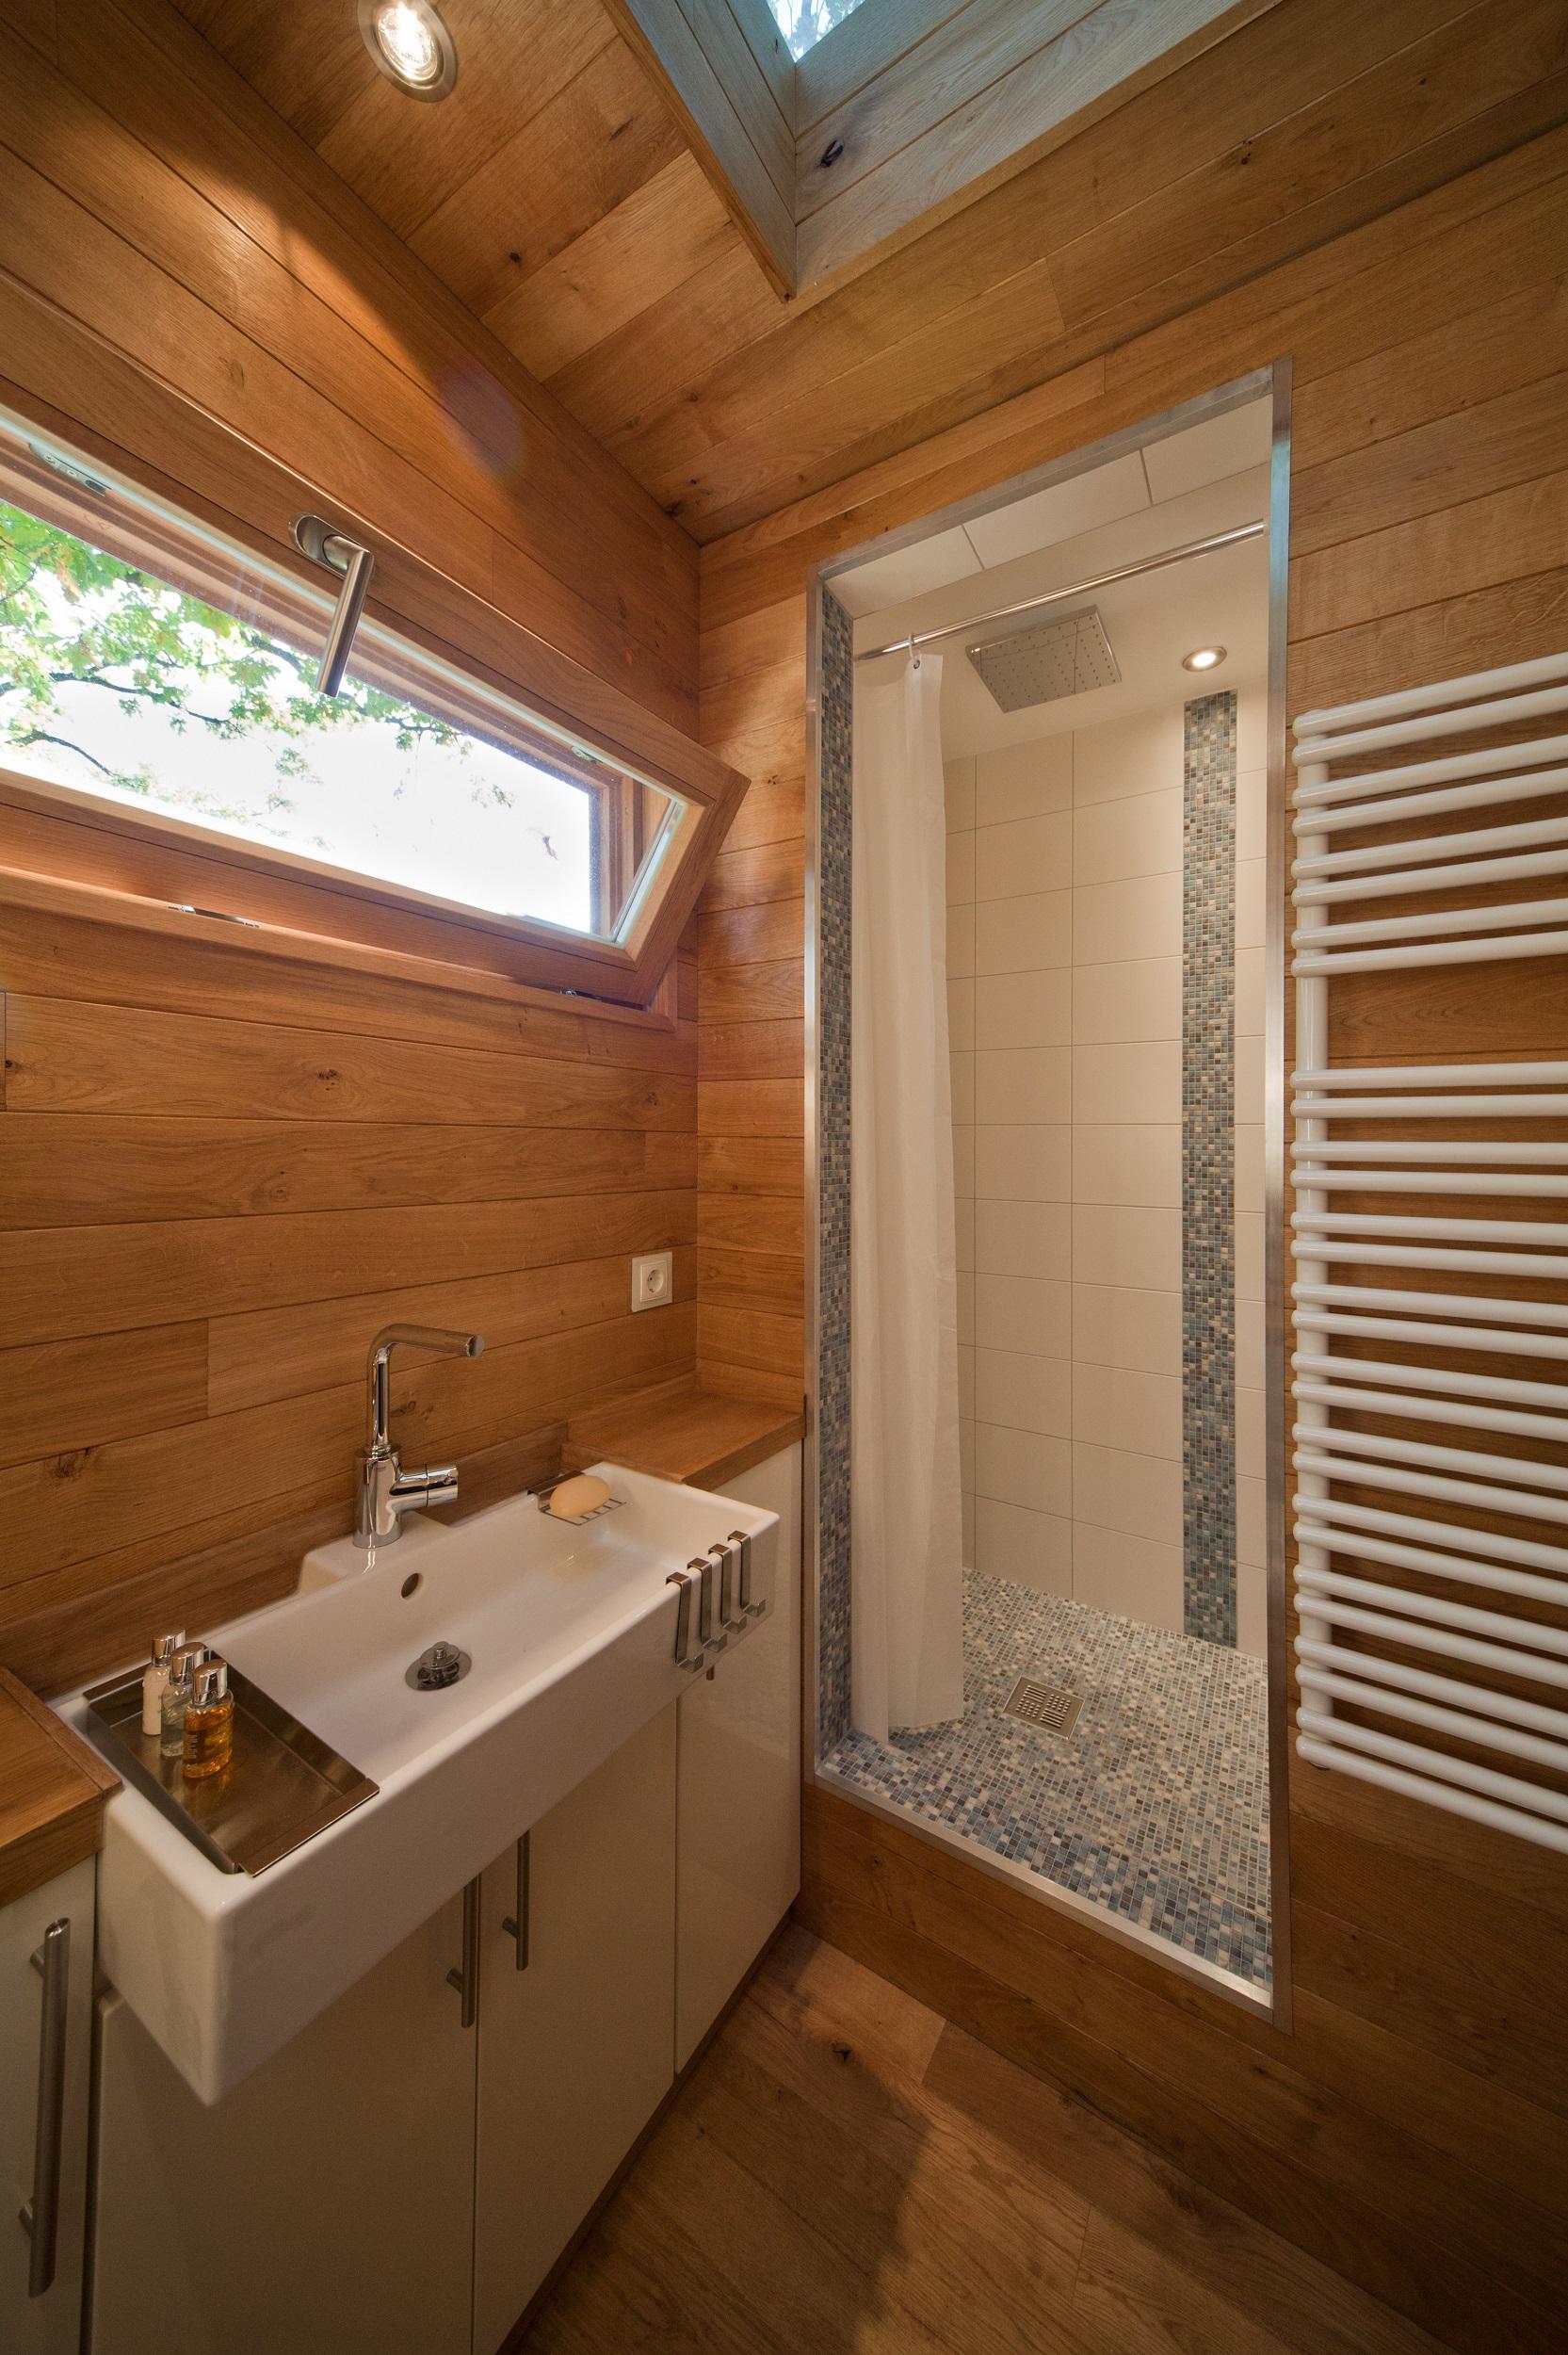 Badezimmer mit Dusche im Baumhaus #baumhaus #holzverkleidung ©baumraum / Markus Bollen